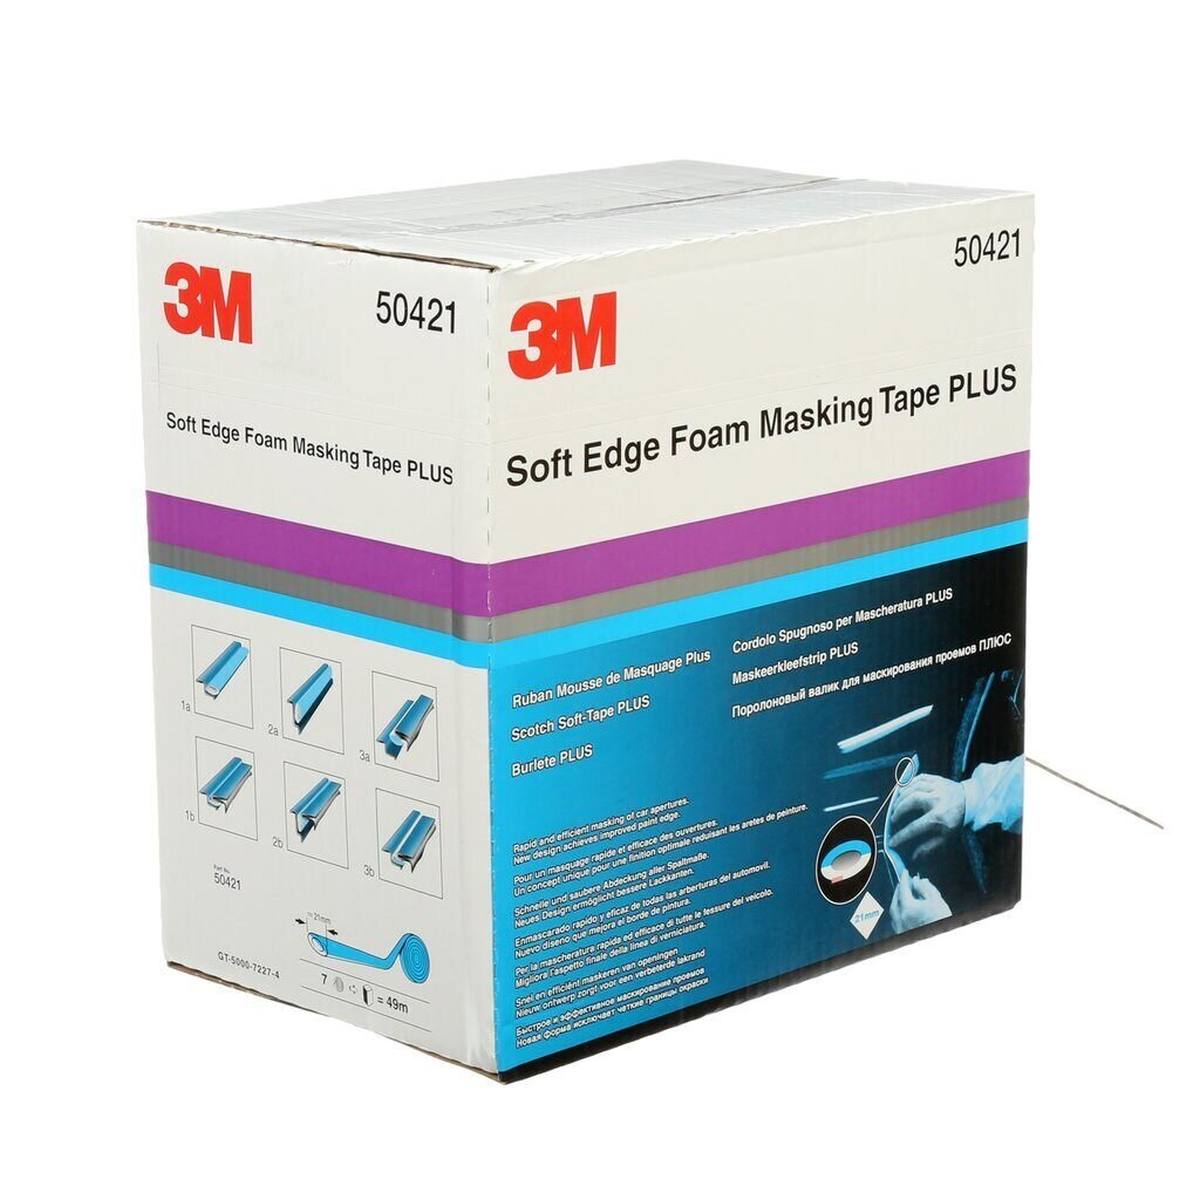 3M Soft Edge Foam Masking Tape PLUS, blauw, 21 mm x 49 m, 50421